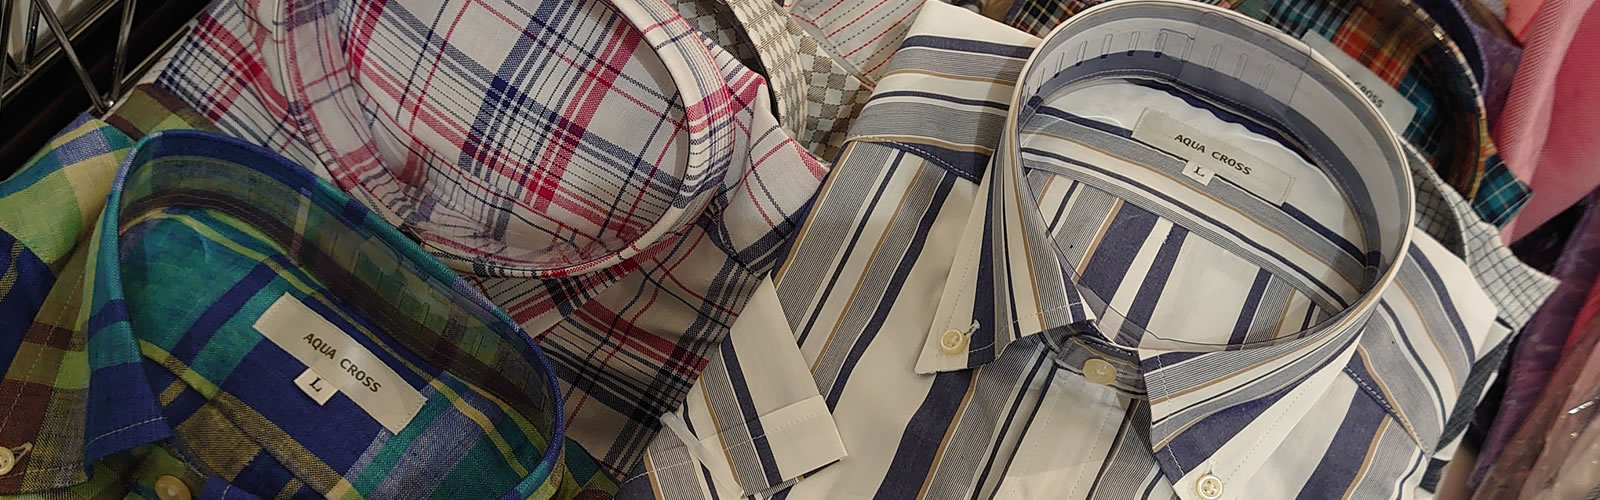 アクアクロスでは、国産の紳士カジュアルシャツ、ポロシャツ、セーターの製造・販売をしています